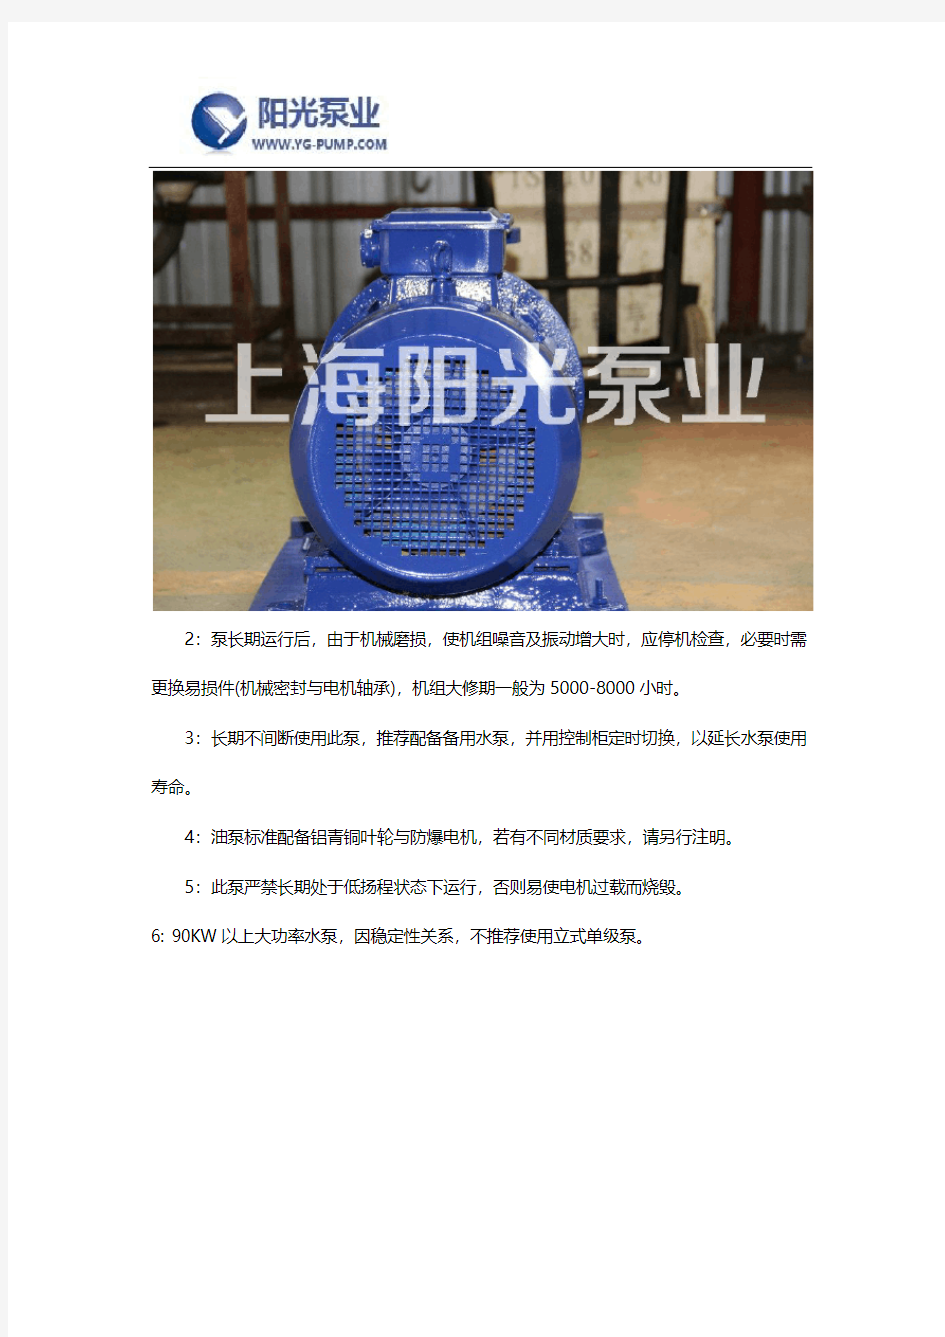 低温冷却循环泵品牌及产品介绍